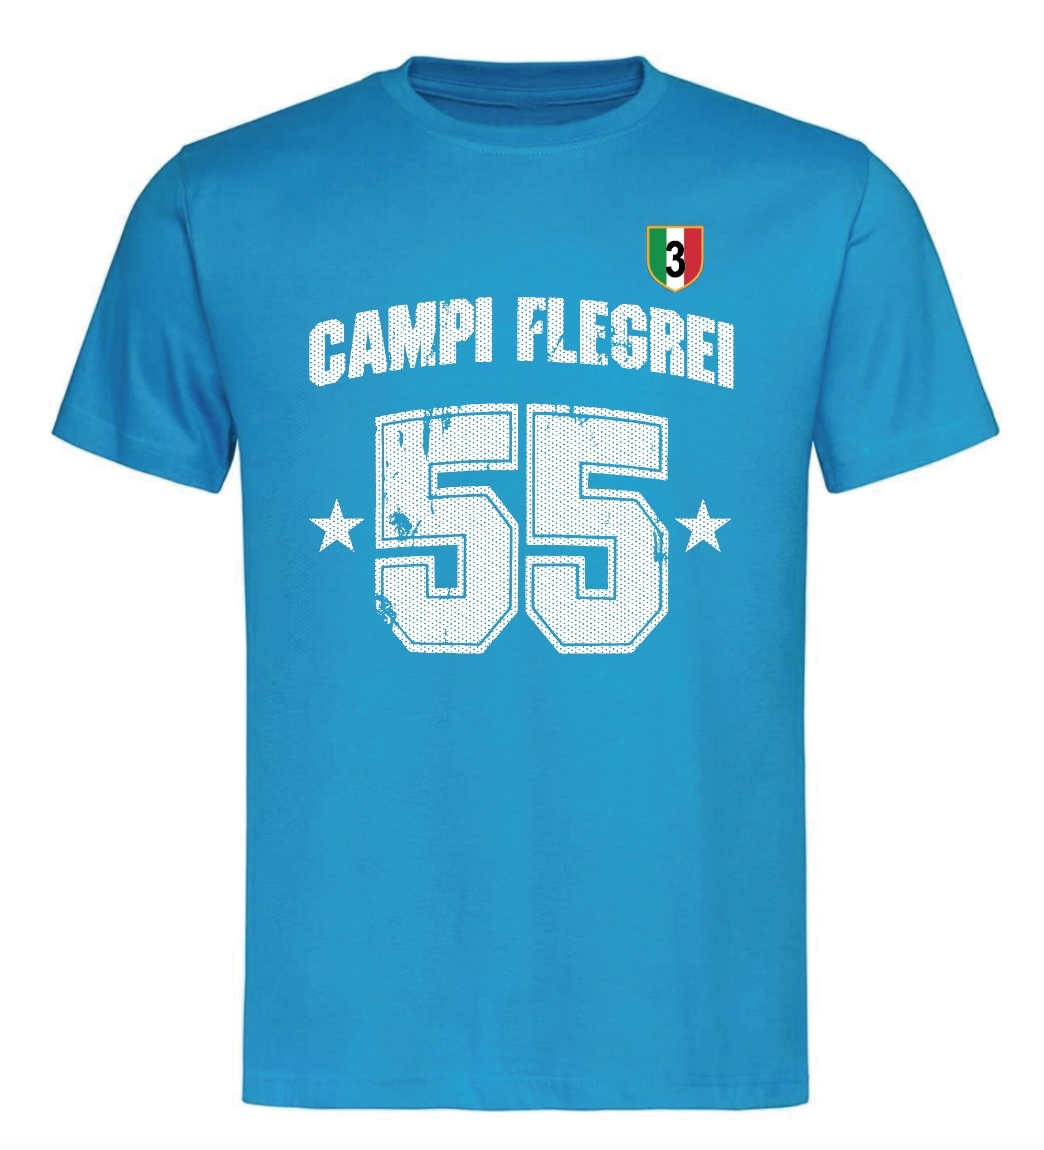 NAPOLI CAMPIONE - Campi Flegrei 55 scritta Curvato + scudetto